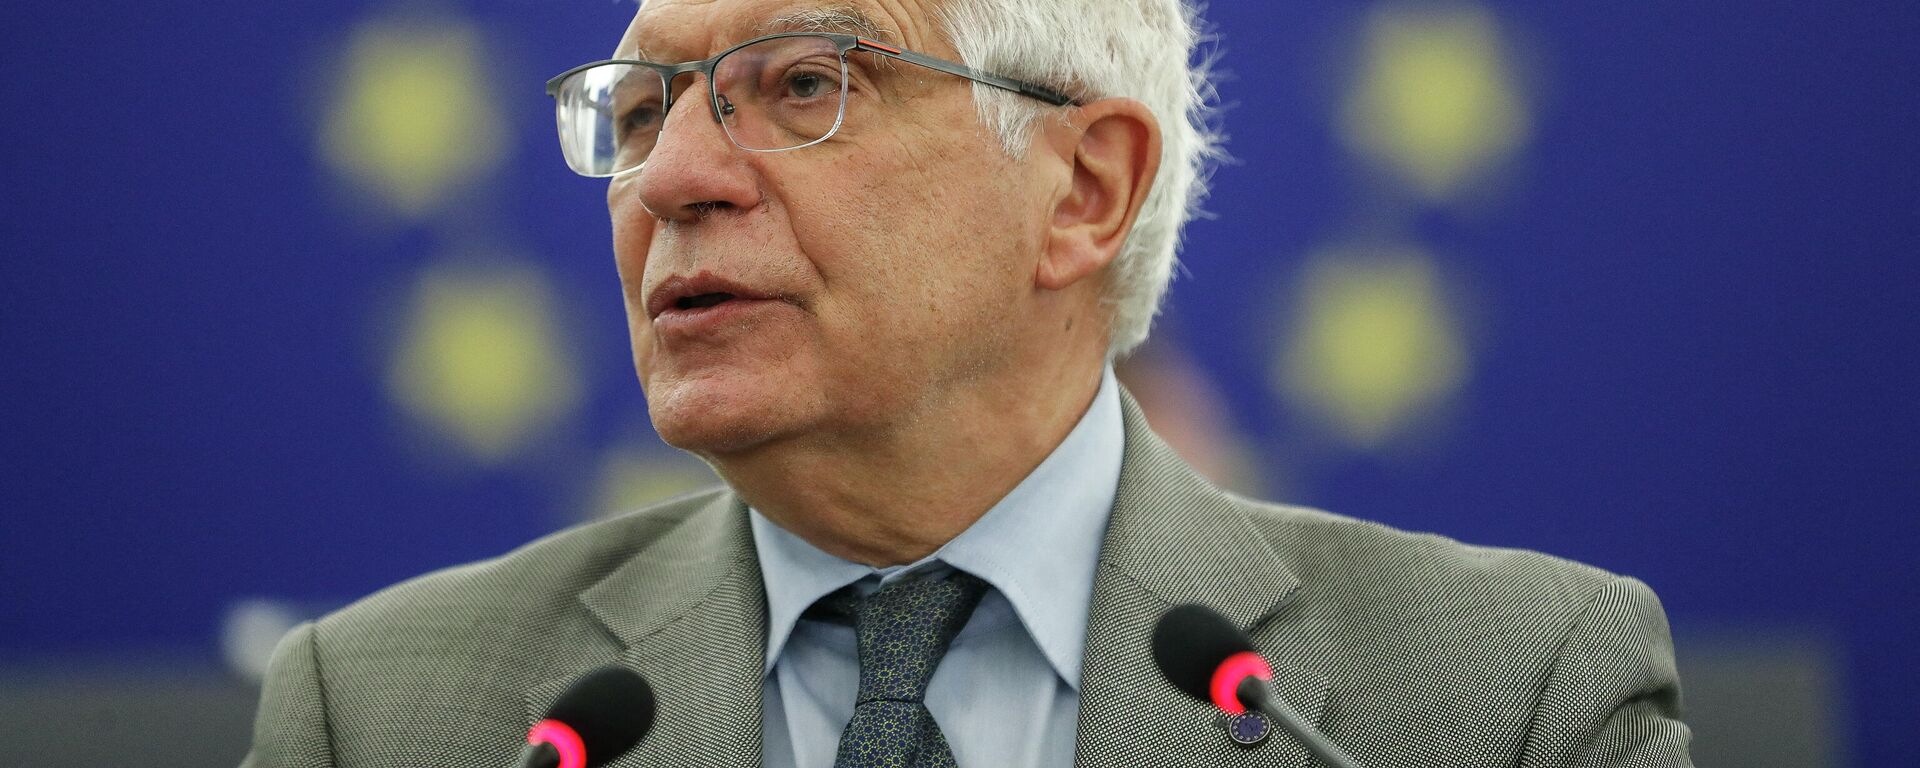 El alto representante para la Política Exterior de la Unión Europea, Josep Borrell - Sputnik Mundo, 1920, 03.10.2021